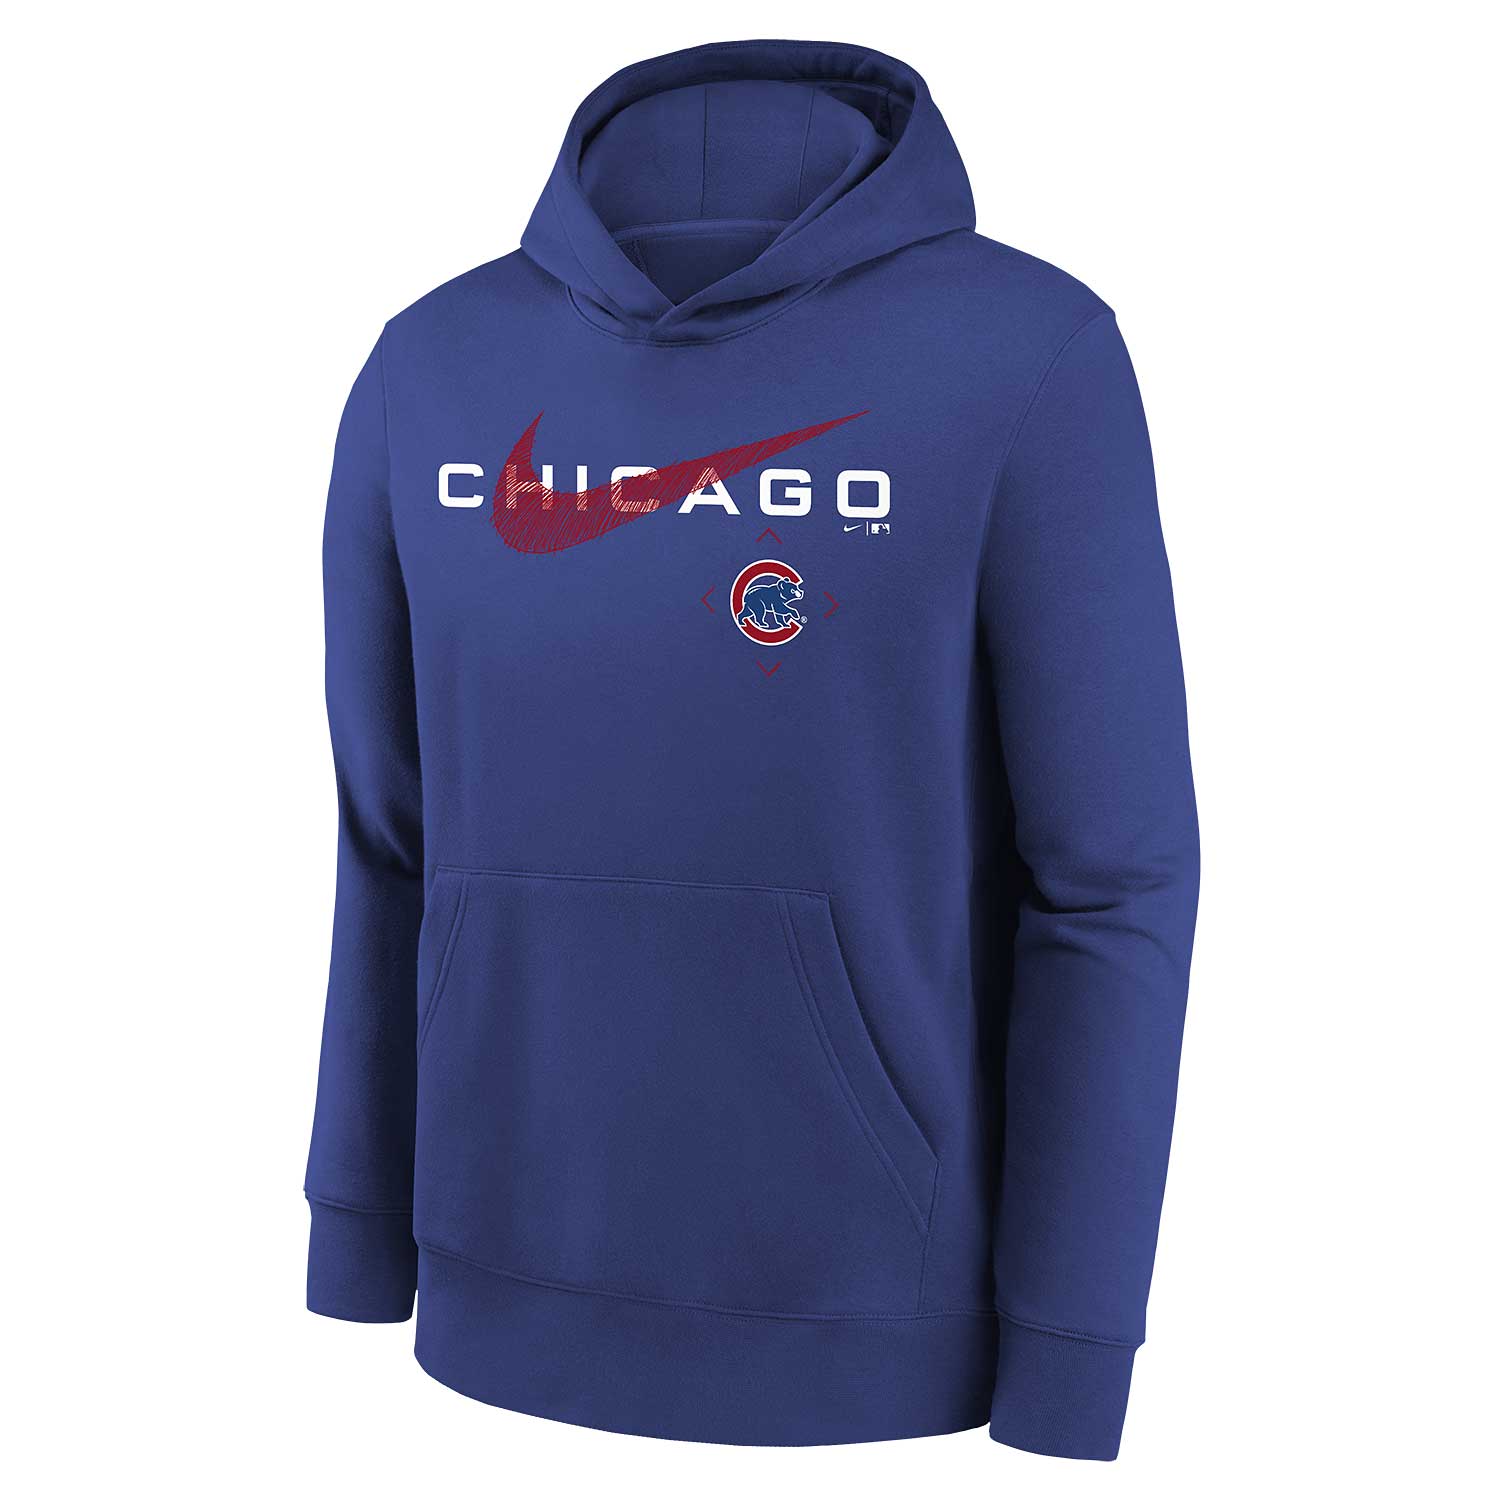 Chicago Cubs Youth Nike Your Neighborhood Hooded Sweatshirt Large = 14-16